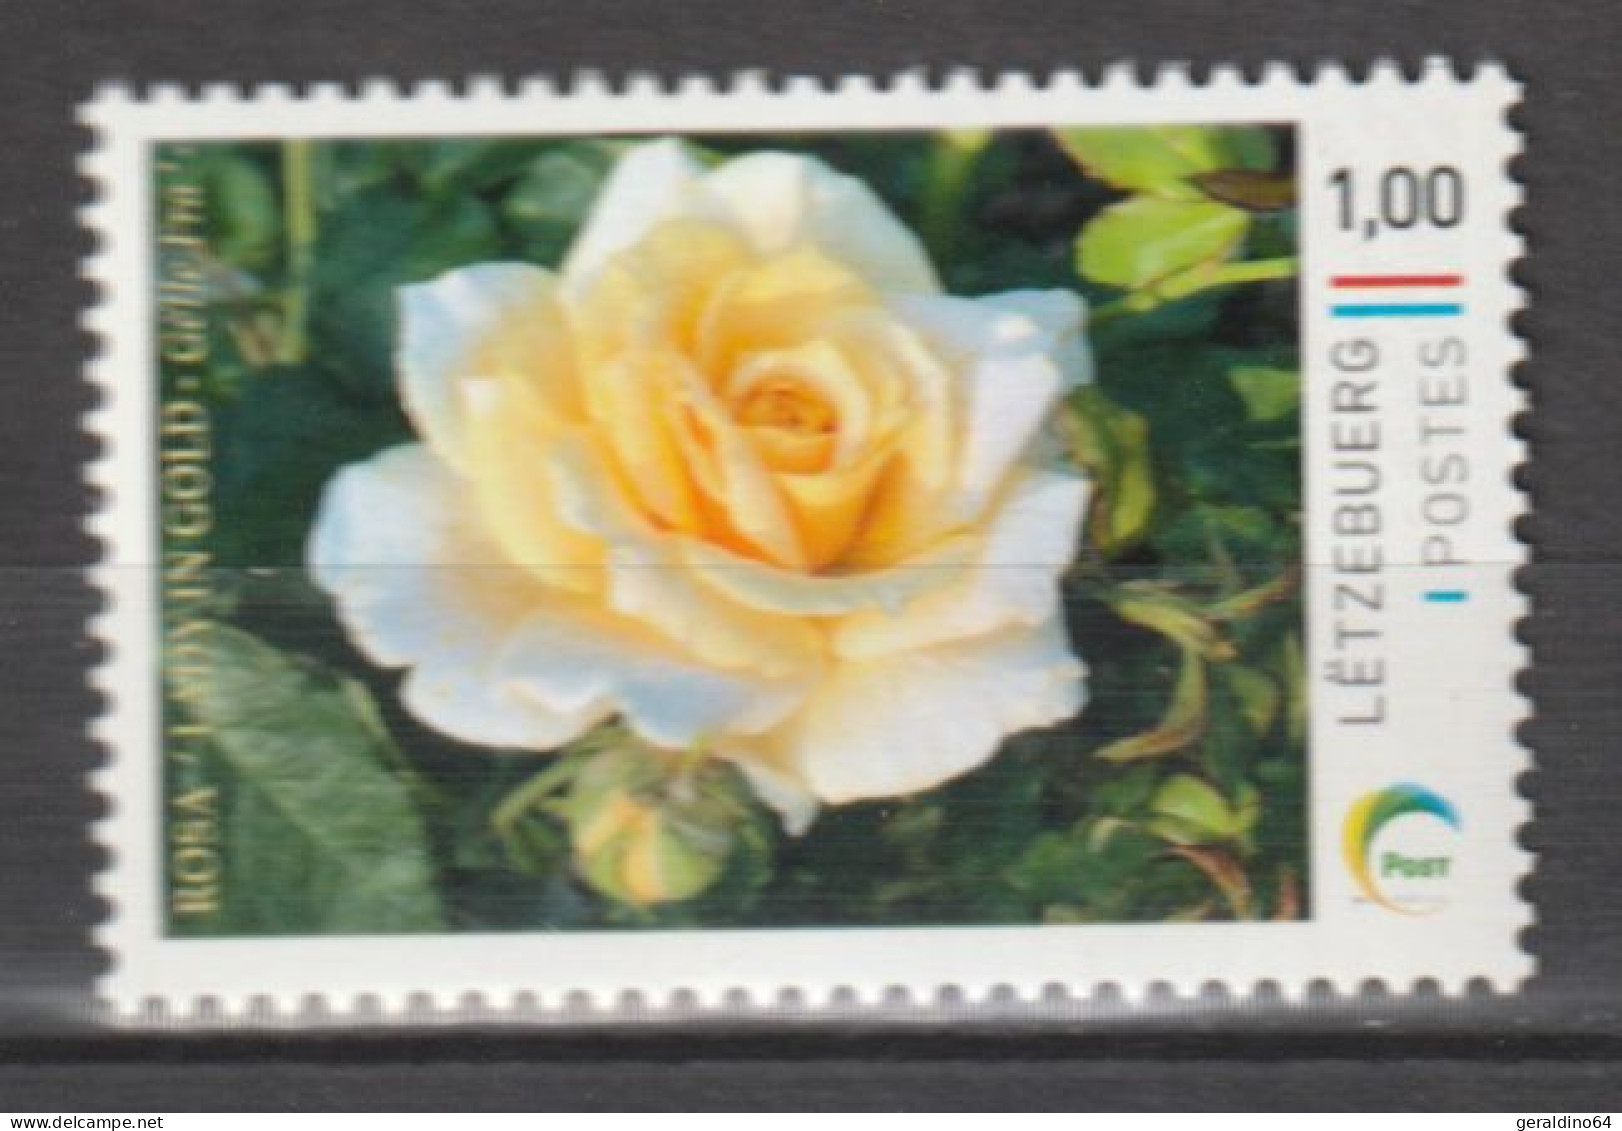 Luxemburg 2023 Personalisierte Briefmarke Rose Lady In Gold ** Postfrisch MNH - Ongebruikt